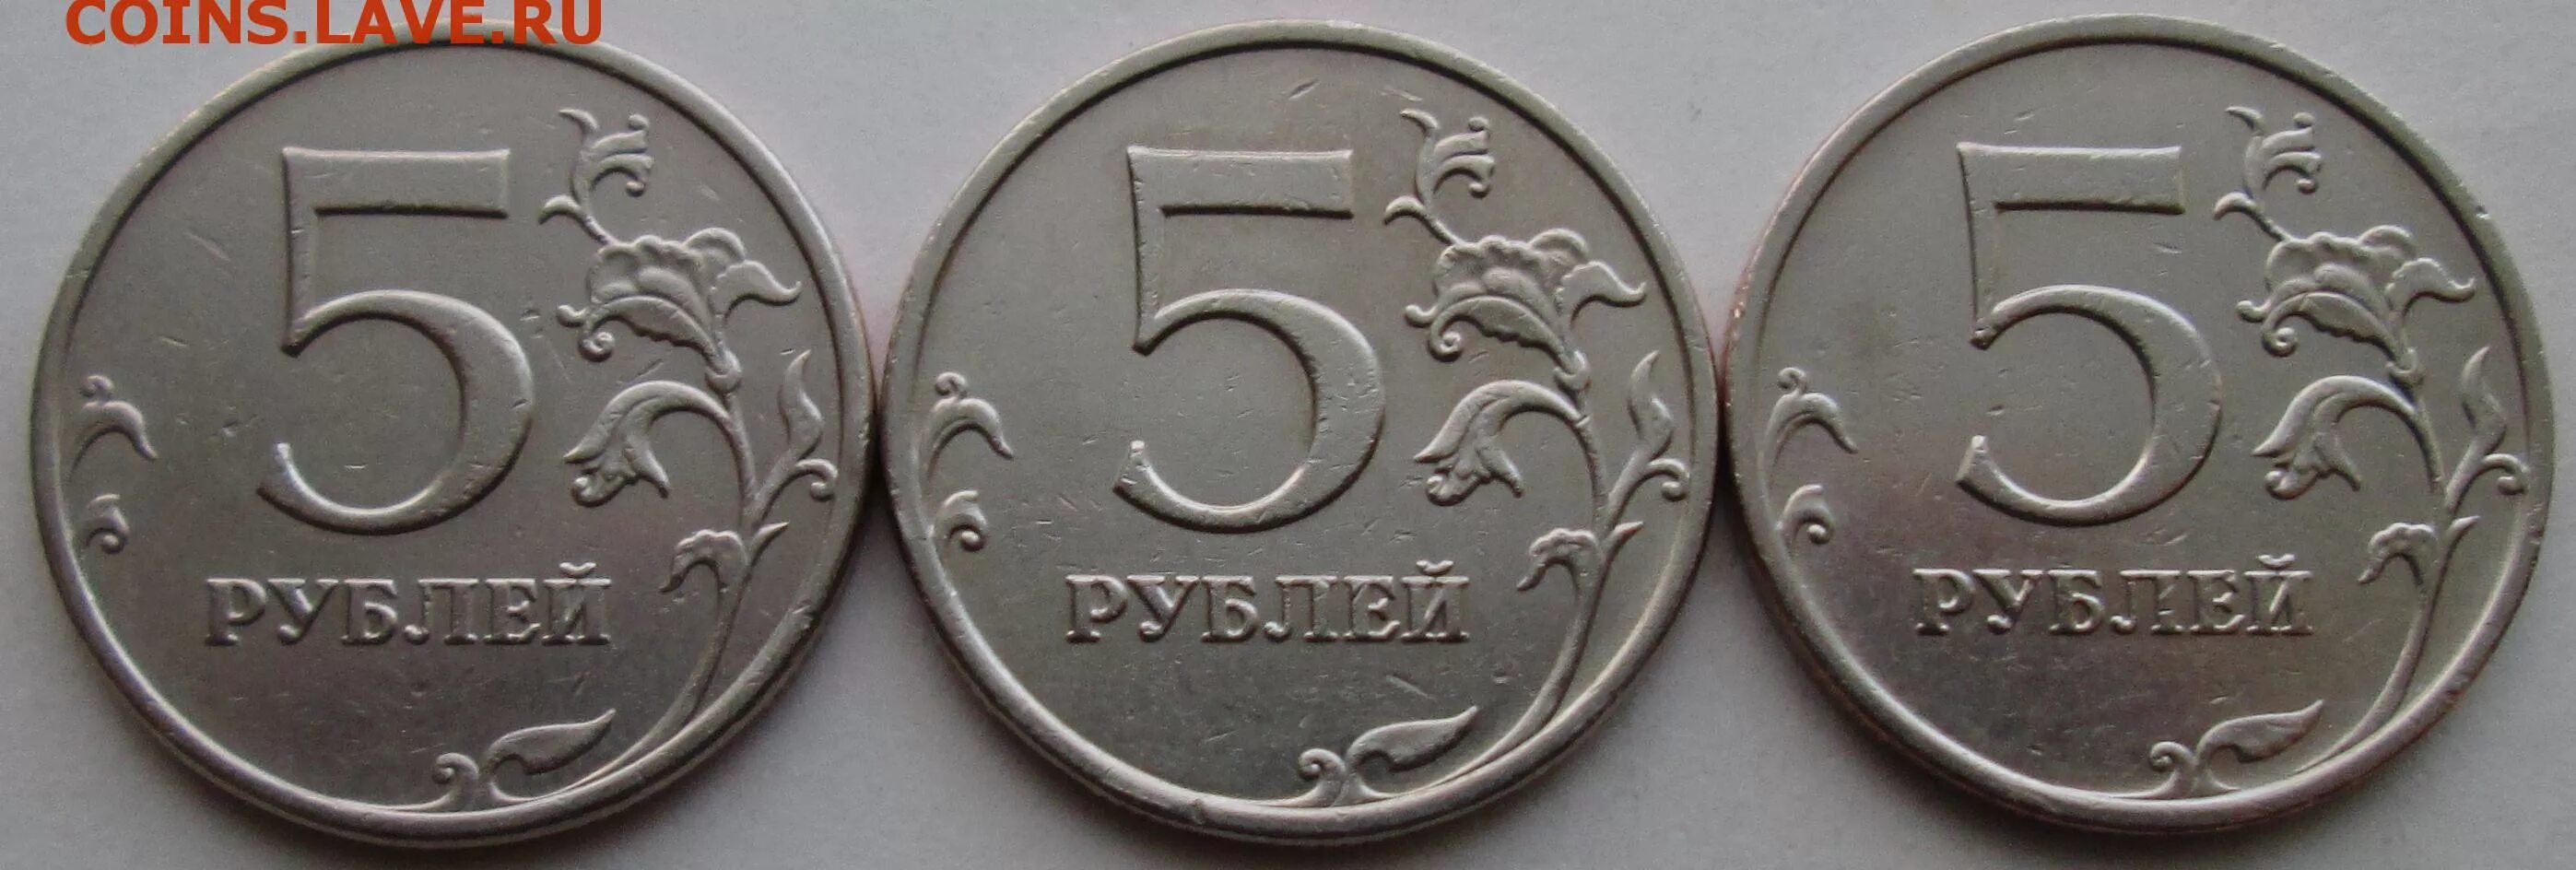 Рубль пять 20 часть. 5 Рублей большие. 3 Шт 1. 5руб 2009г СПМД магнитная цена на аукционе. Ас24-5-1.